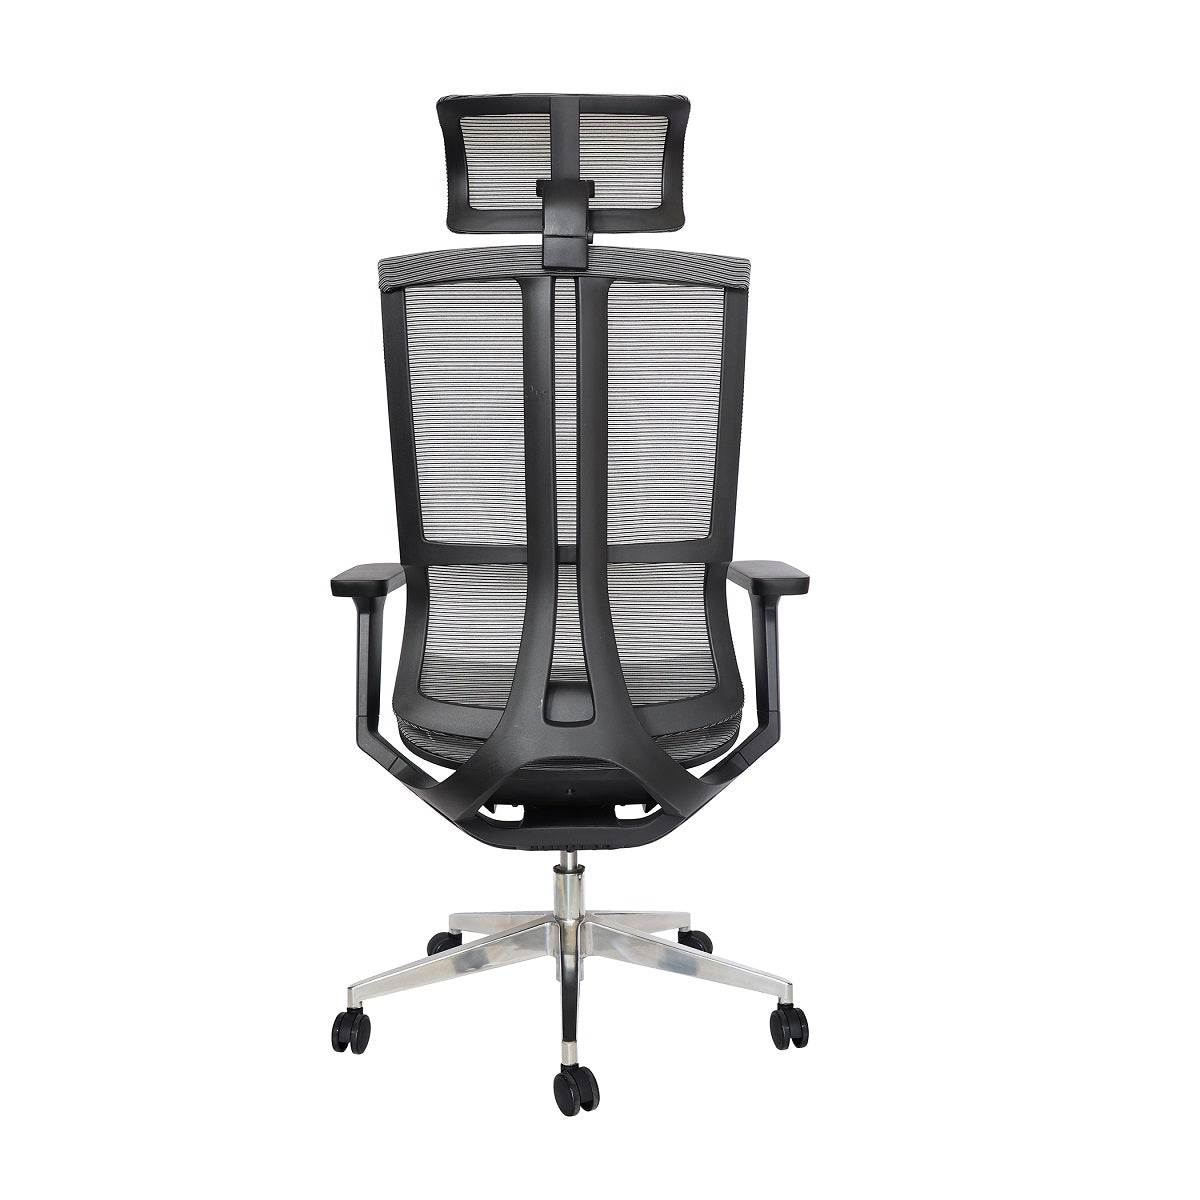 Sillón ejecutivo Dillon OHE-35 respaldo y asiento tapizado en malla negro con base aluminio